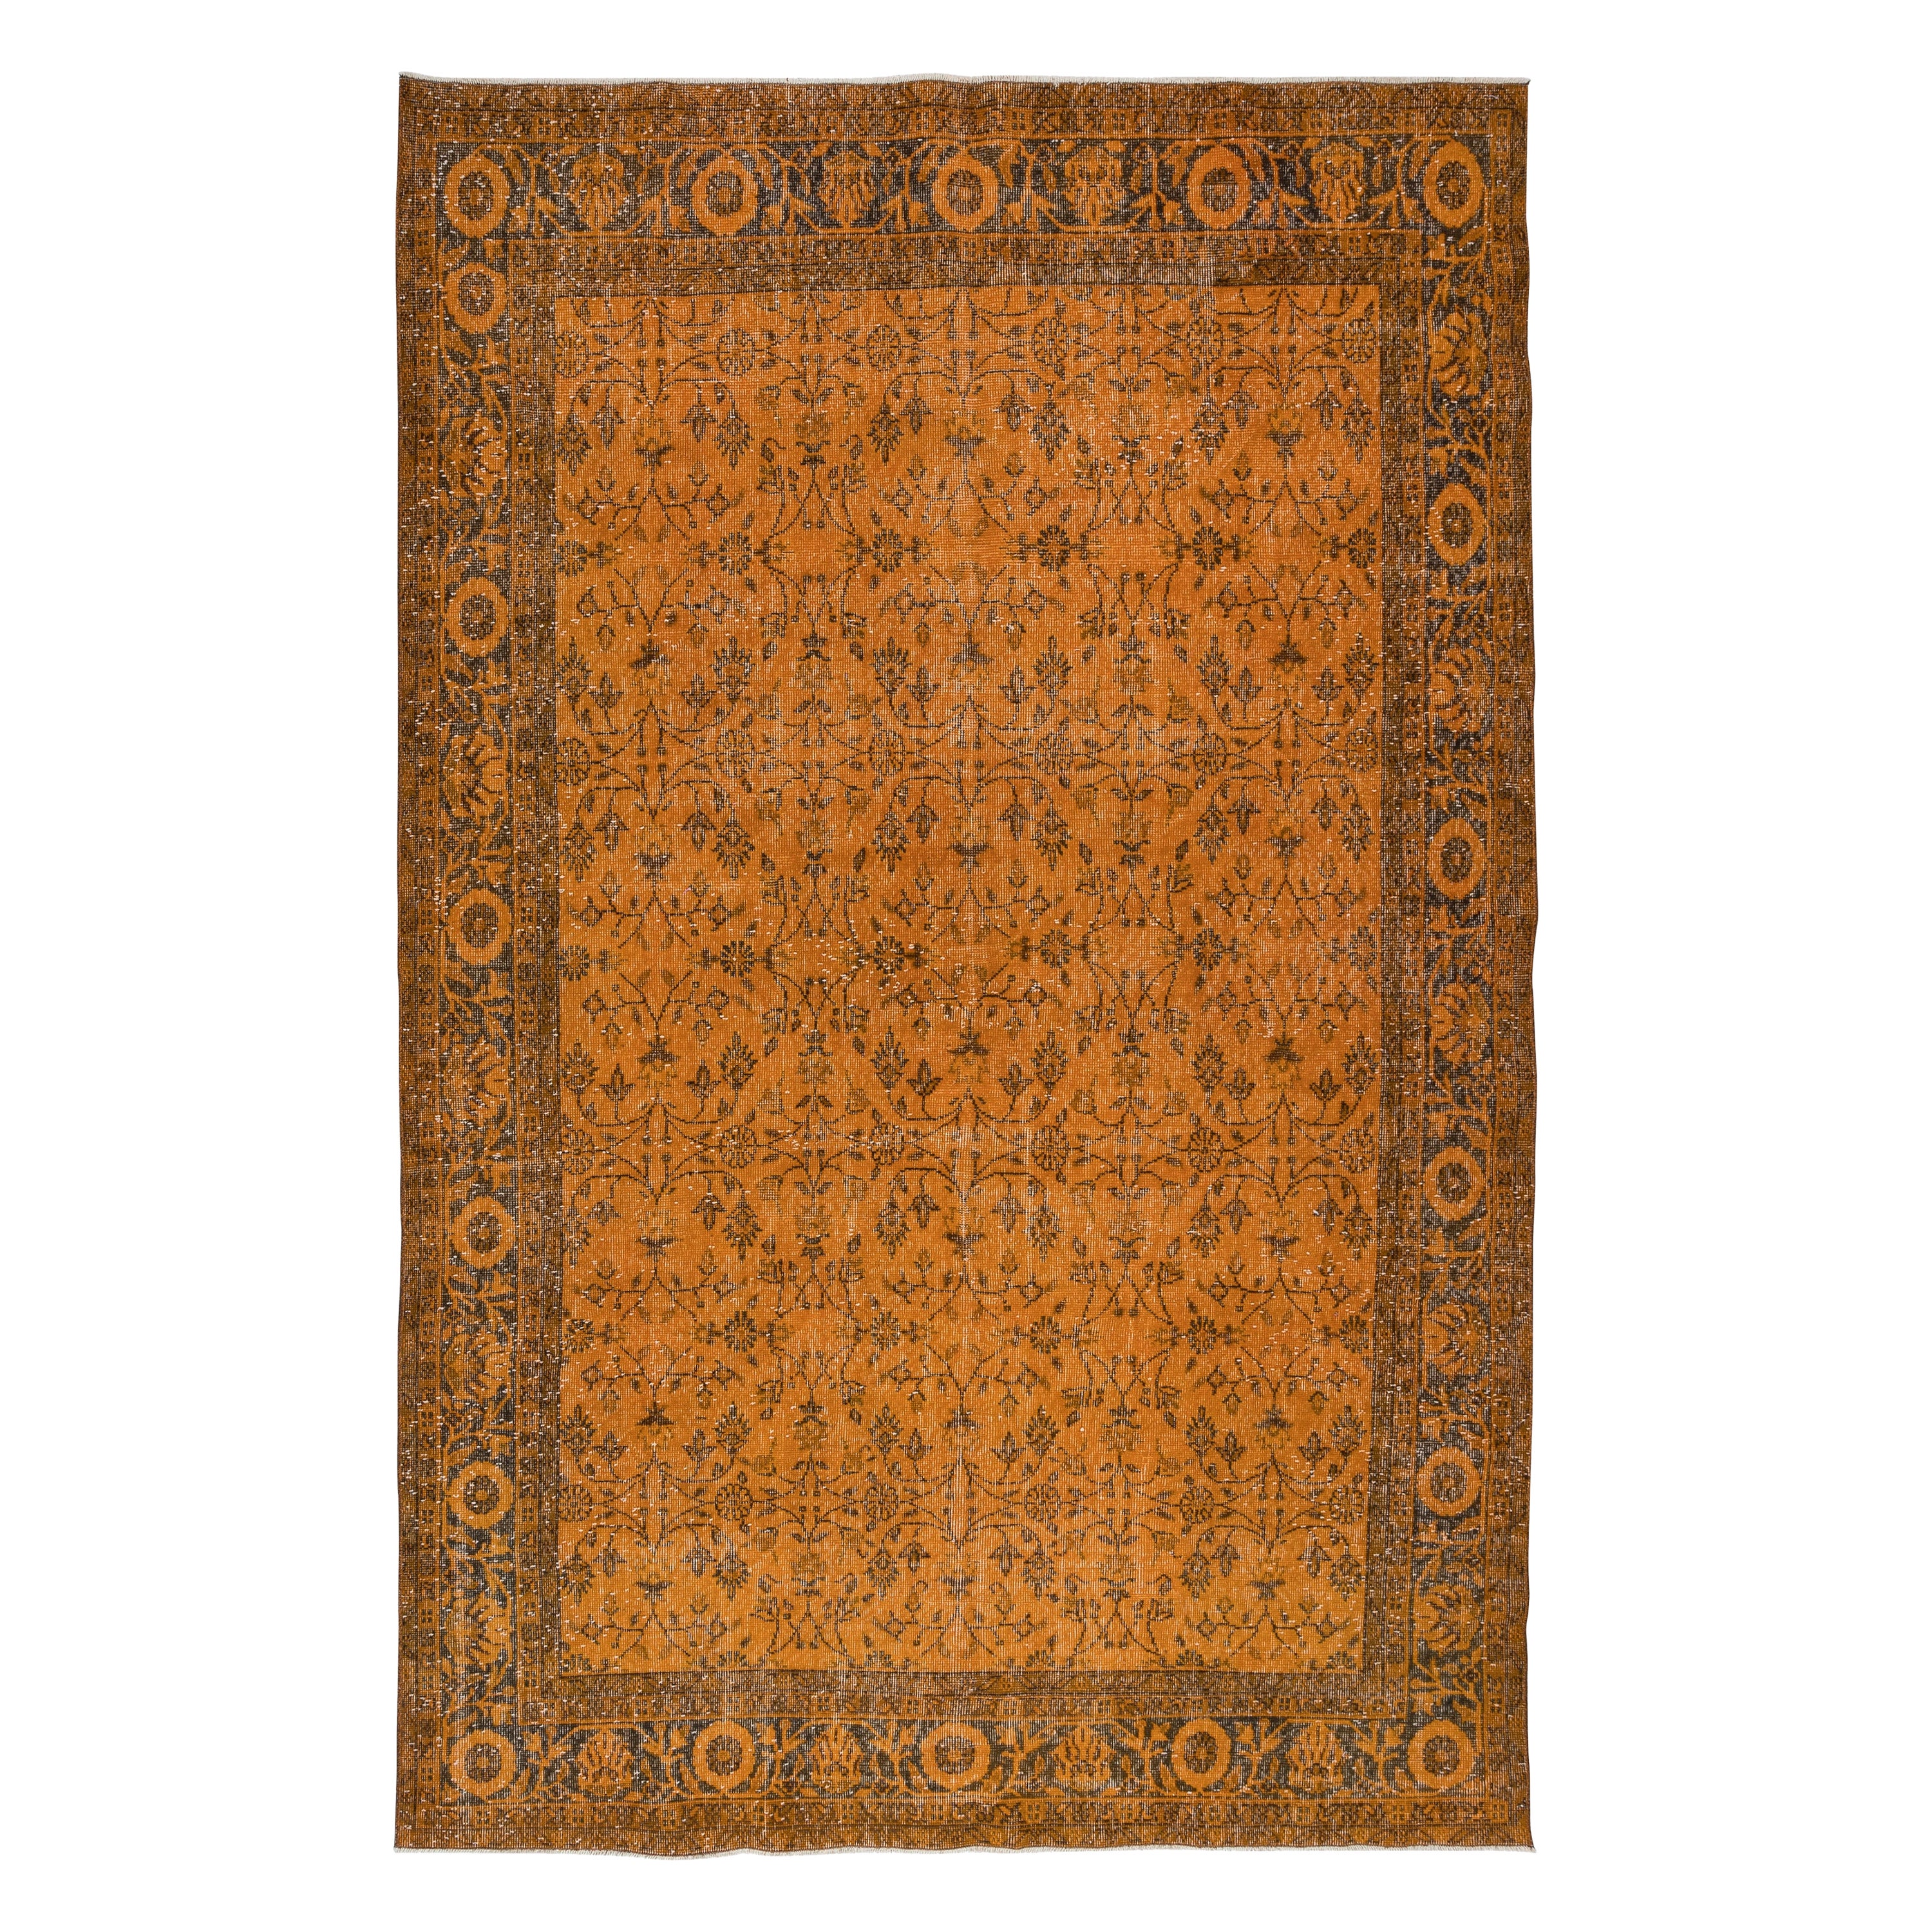 6.7x10,5 Ft Handgefertigter Teppich mit botanischem All-Over-Design, orangefarbener türkischer Teppich